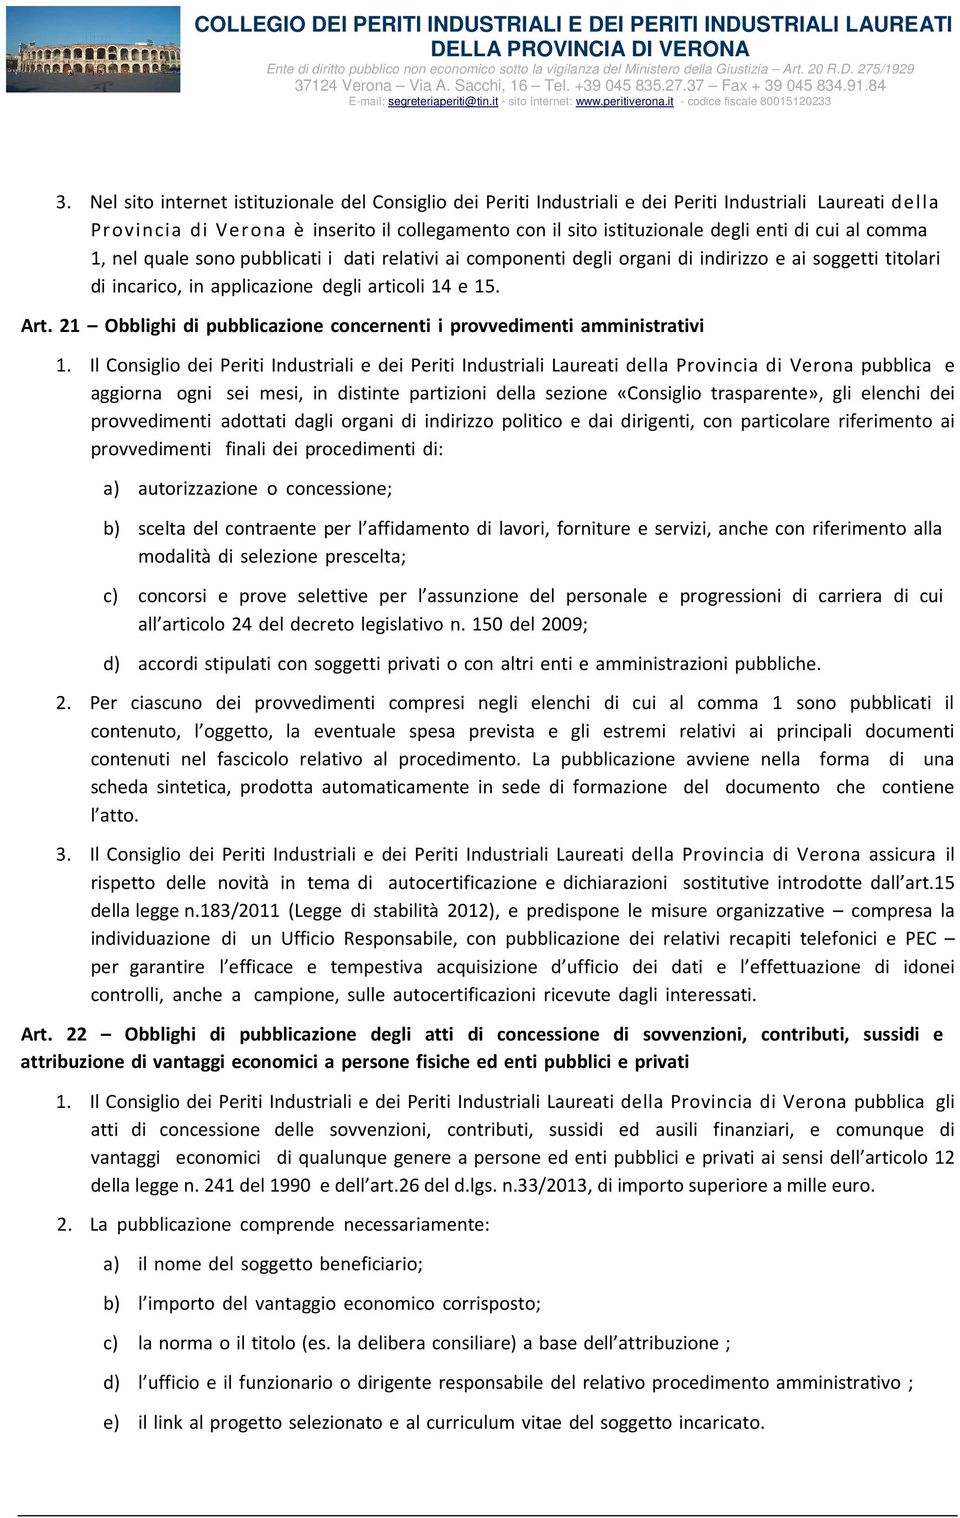 21 Obblighi di pubblicazione concernenti i provvedimenti amministrativi 1.